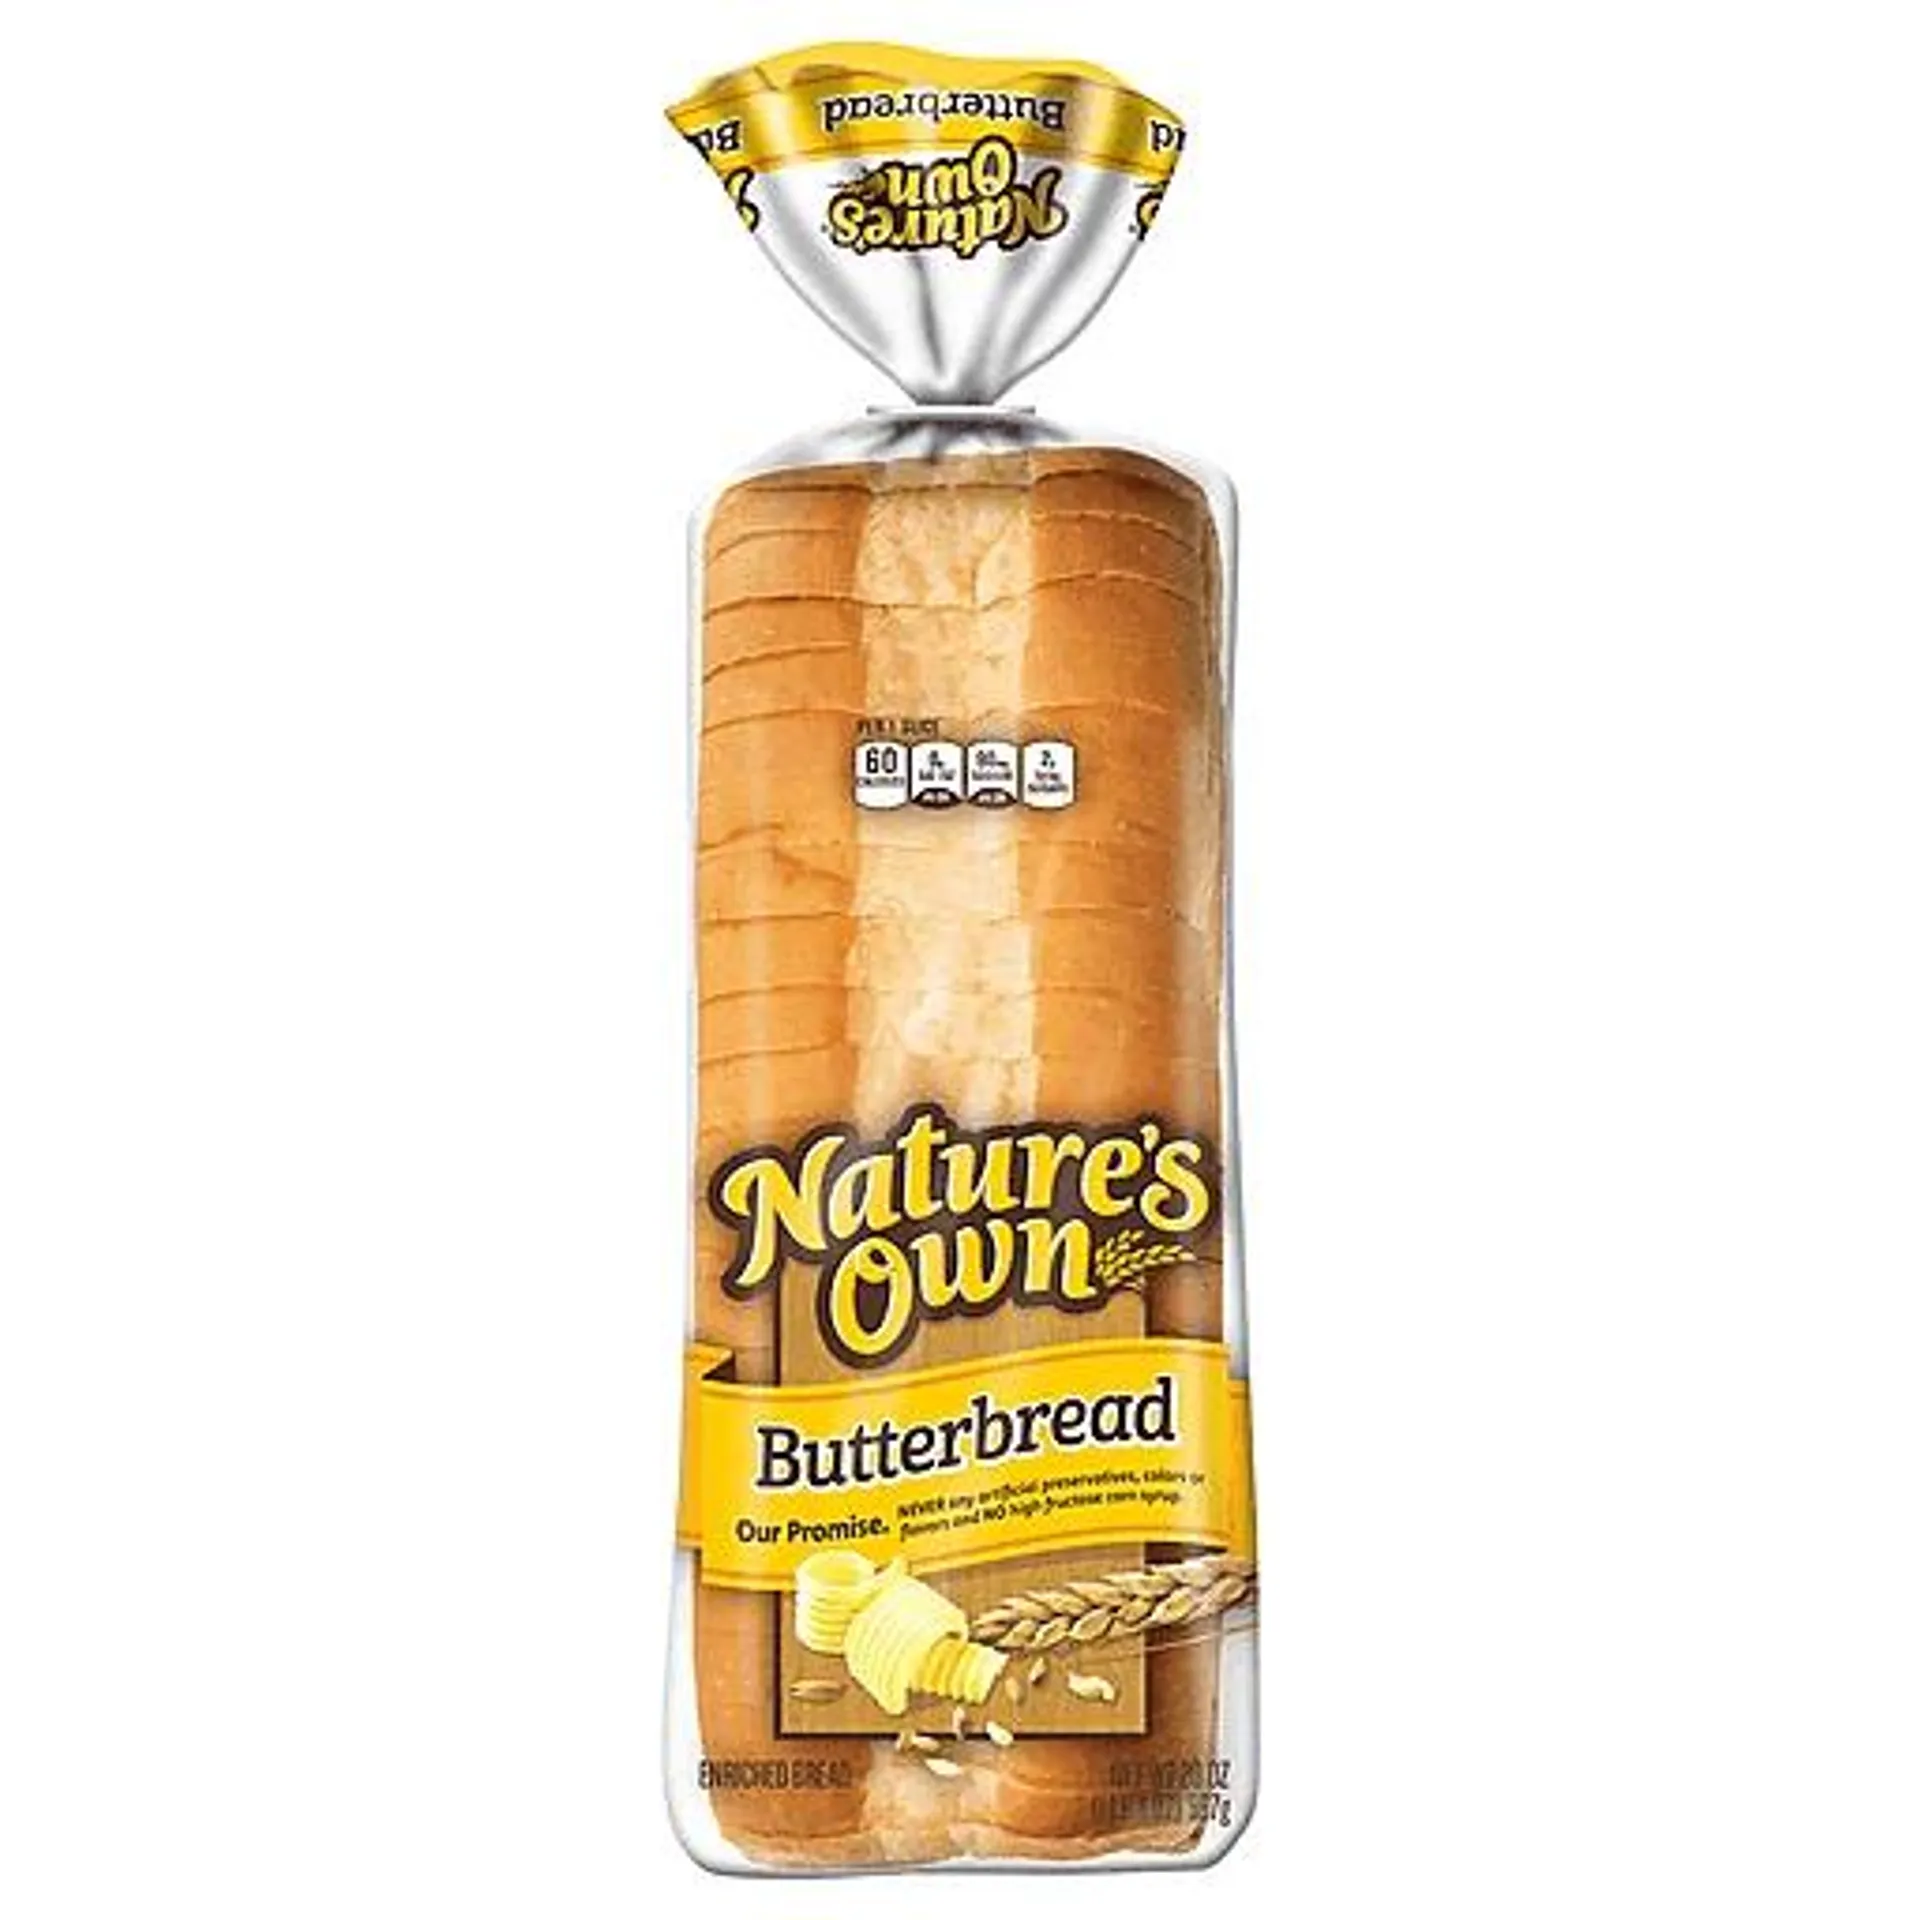 Nature's Own Bread, Butterbread 20 oz